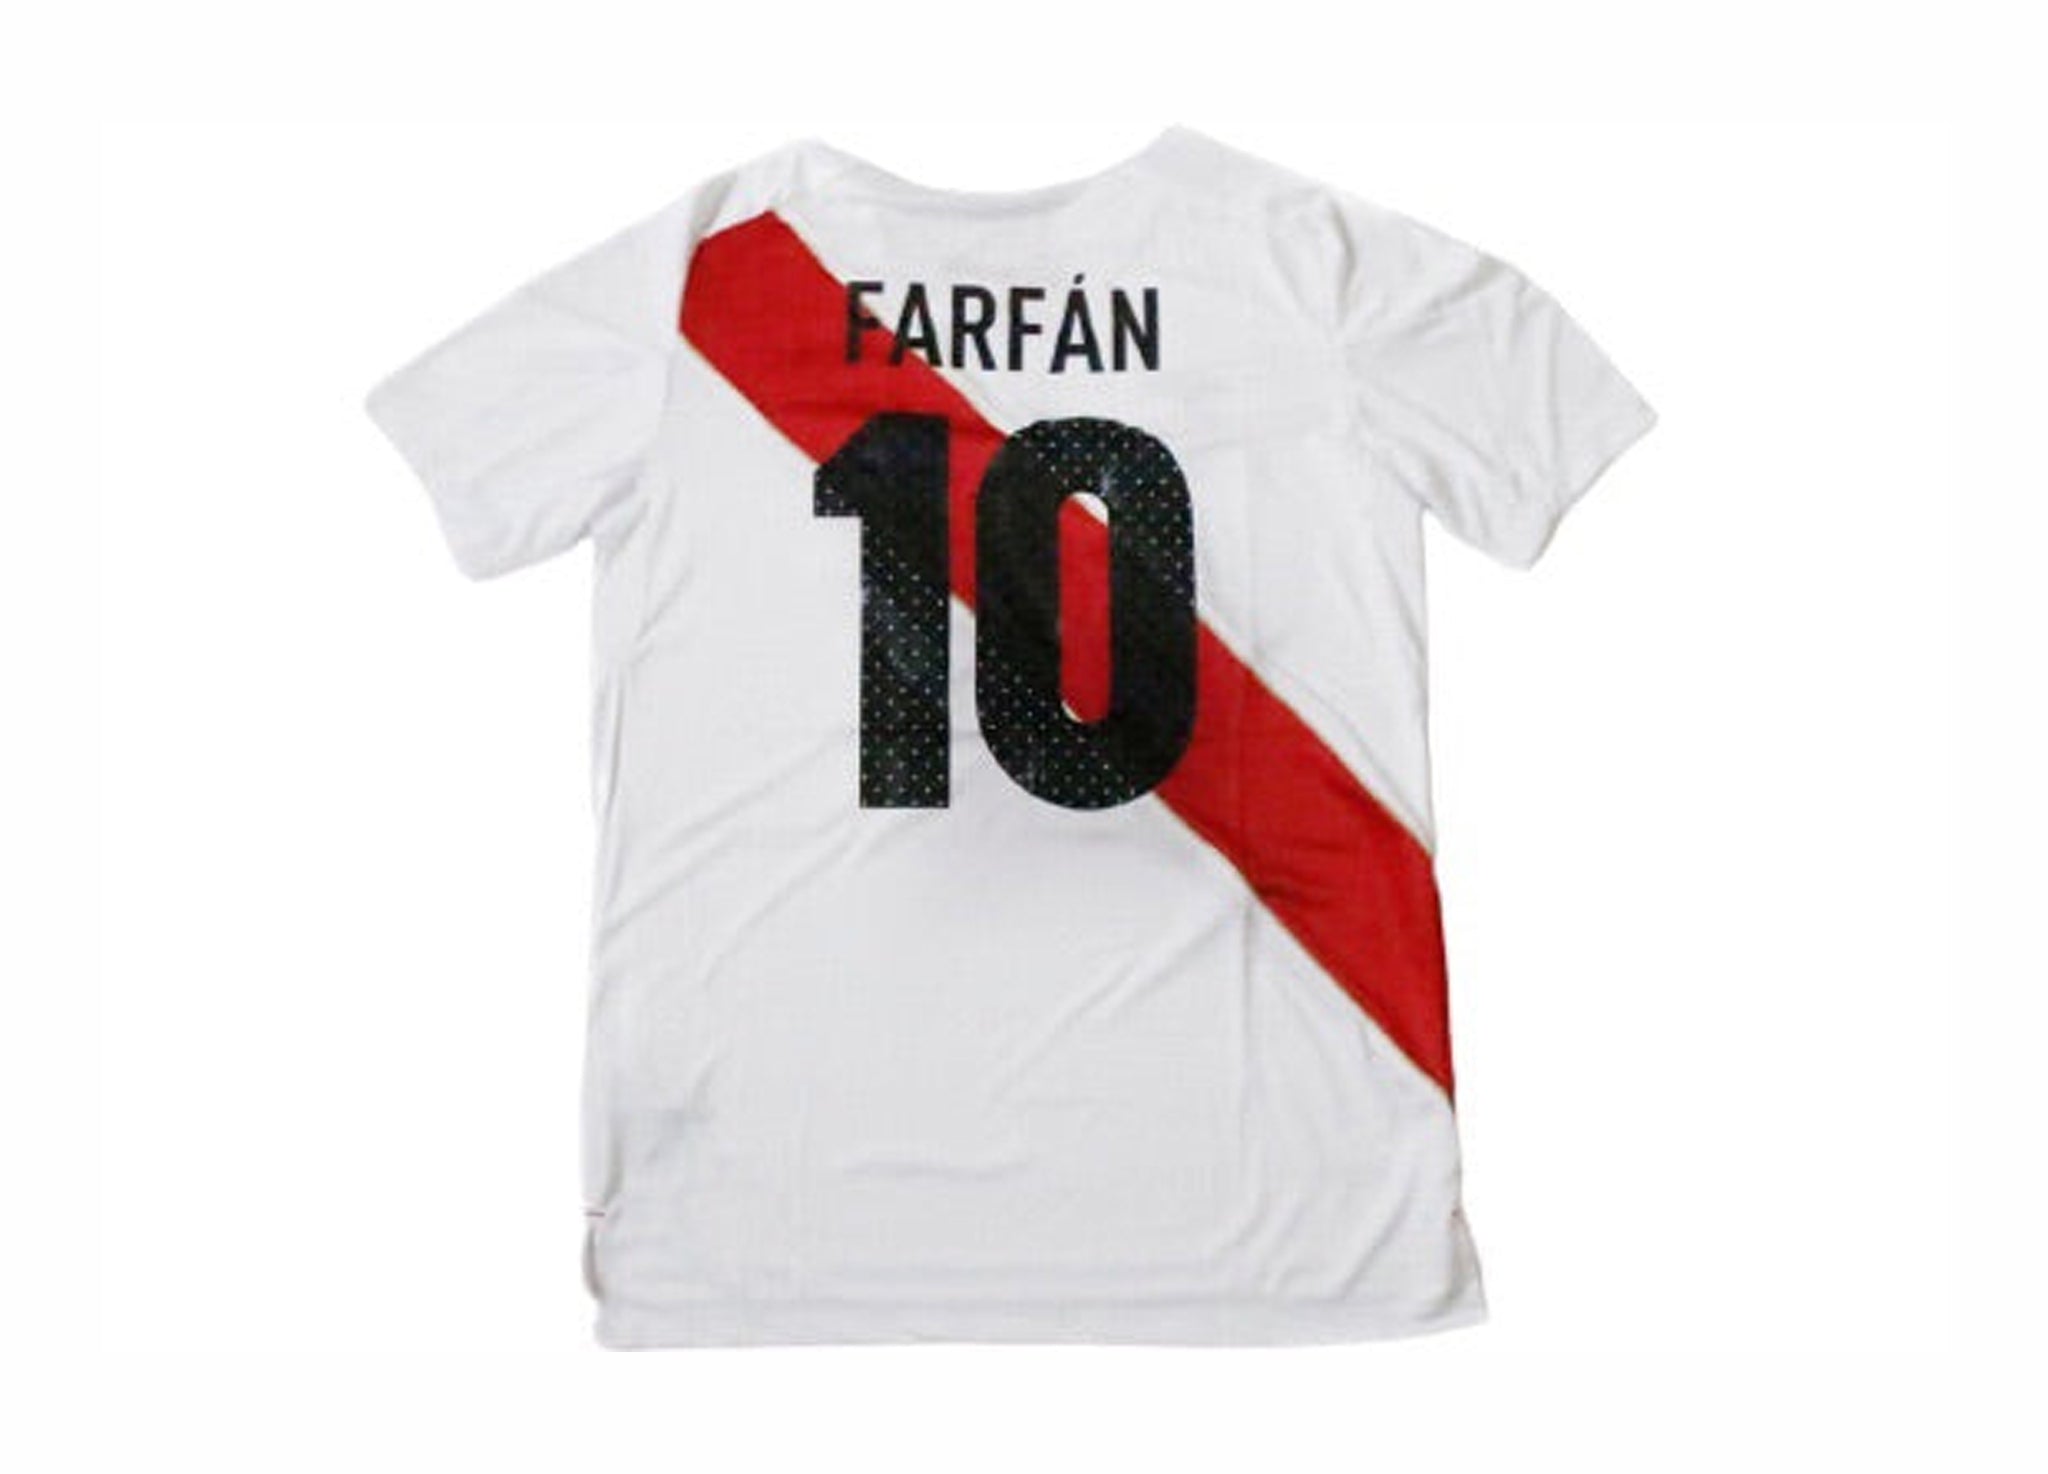 2017-2018 Peru Away Jersey (#10 Farfan)